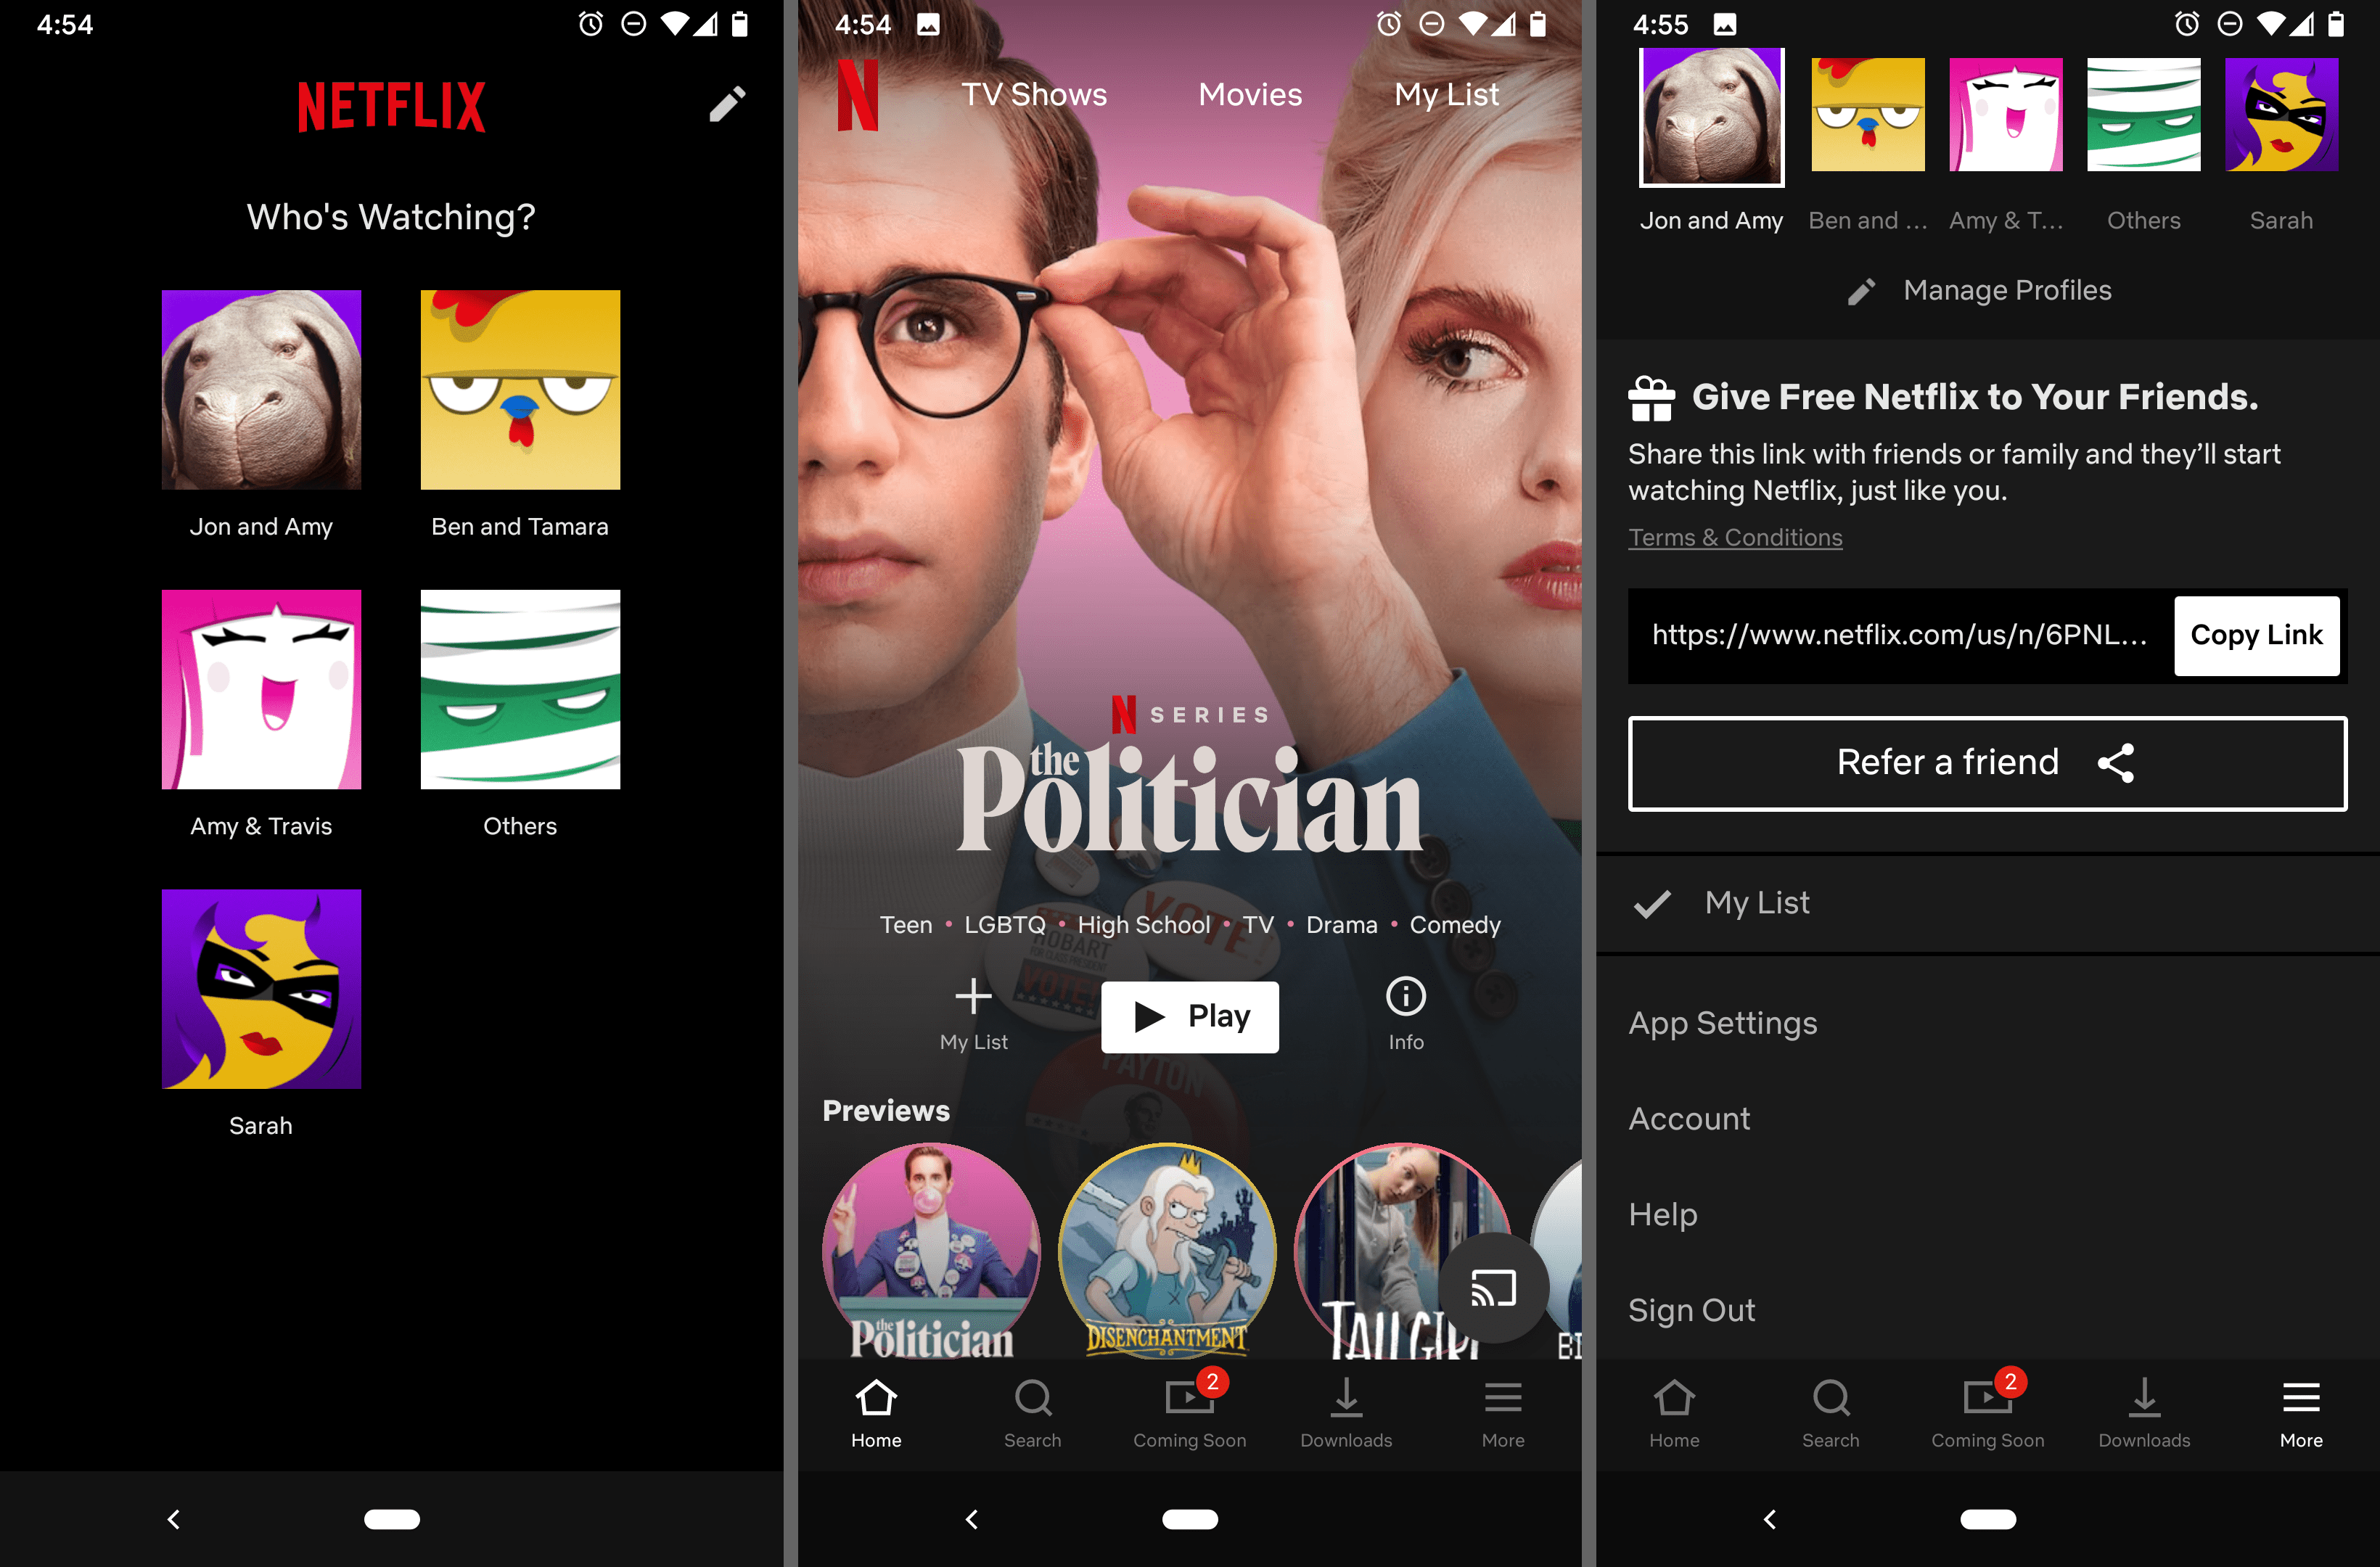 Domovská obrazovka aplikace Netflix pro Android a obrazovka dalších nastavení